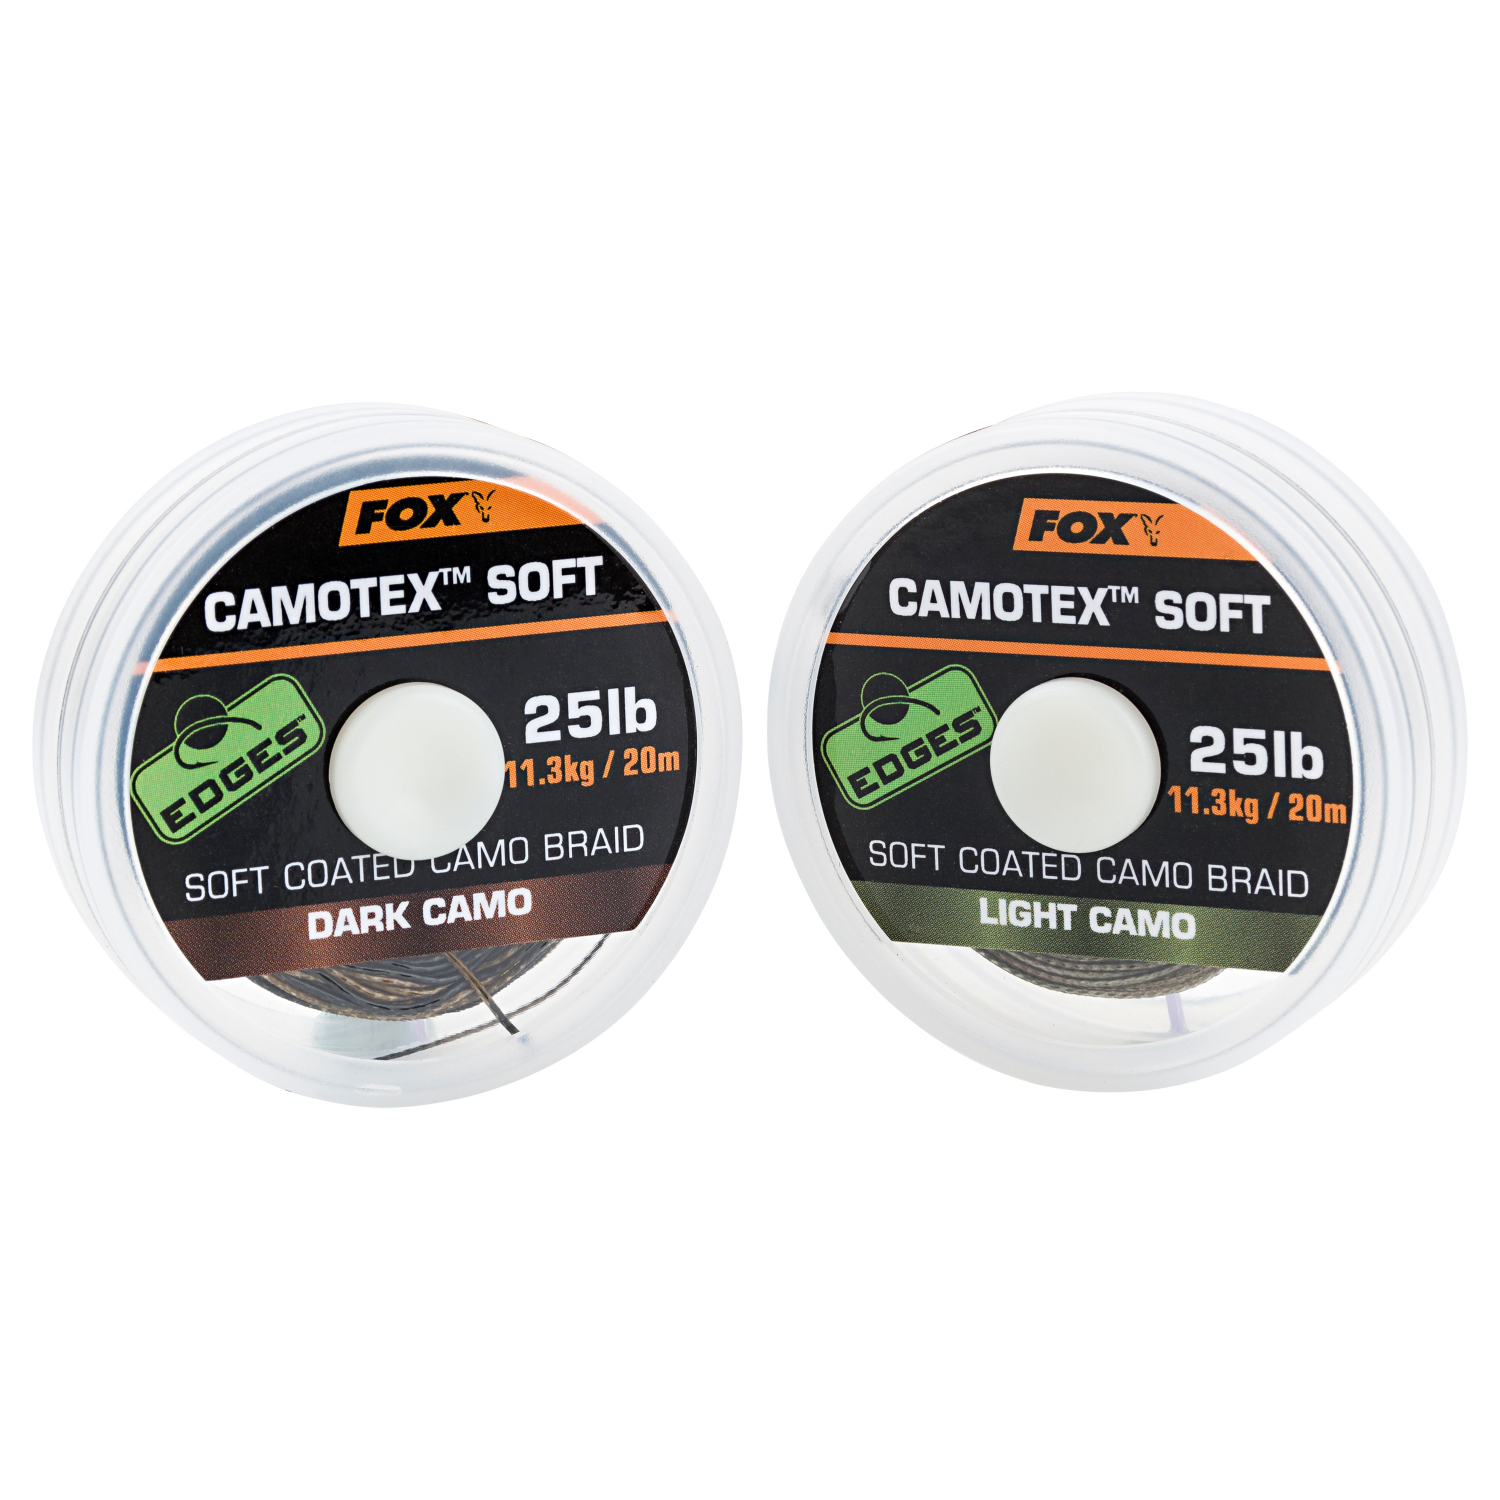 Fox Carp Fox Camotex Soft Coated Camo Braid Light Camo 